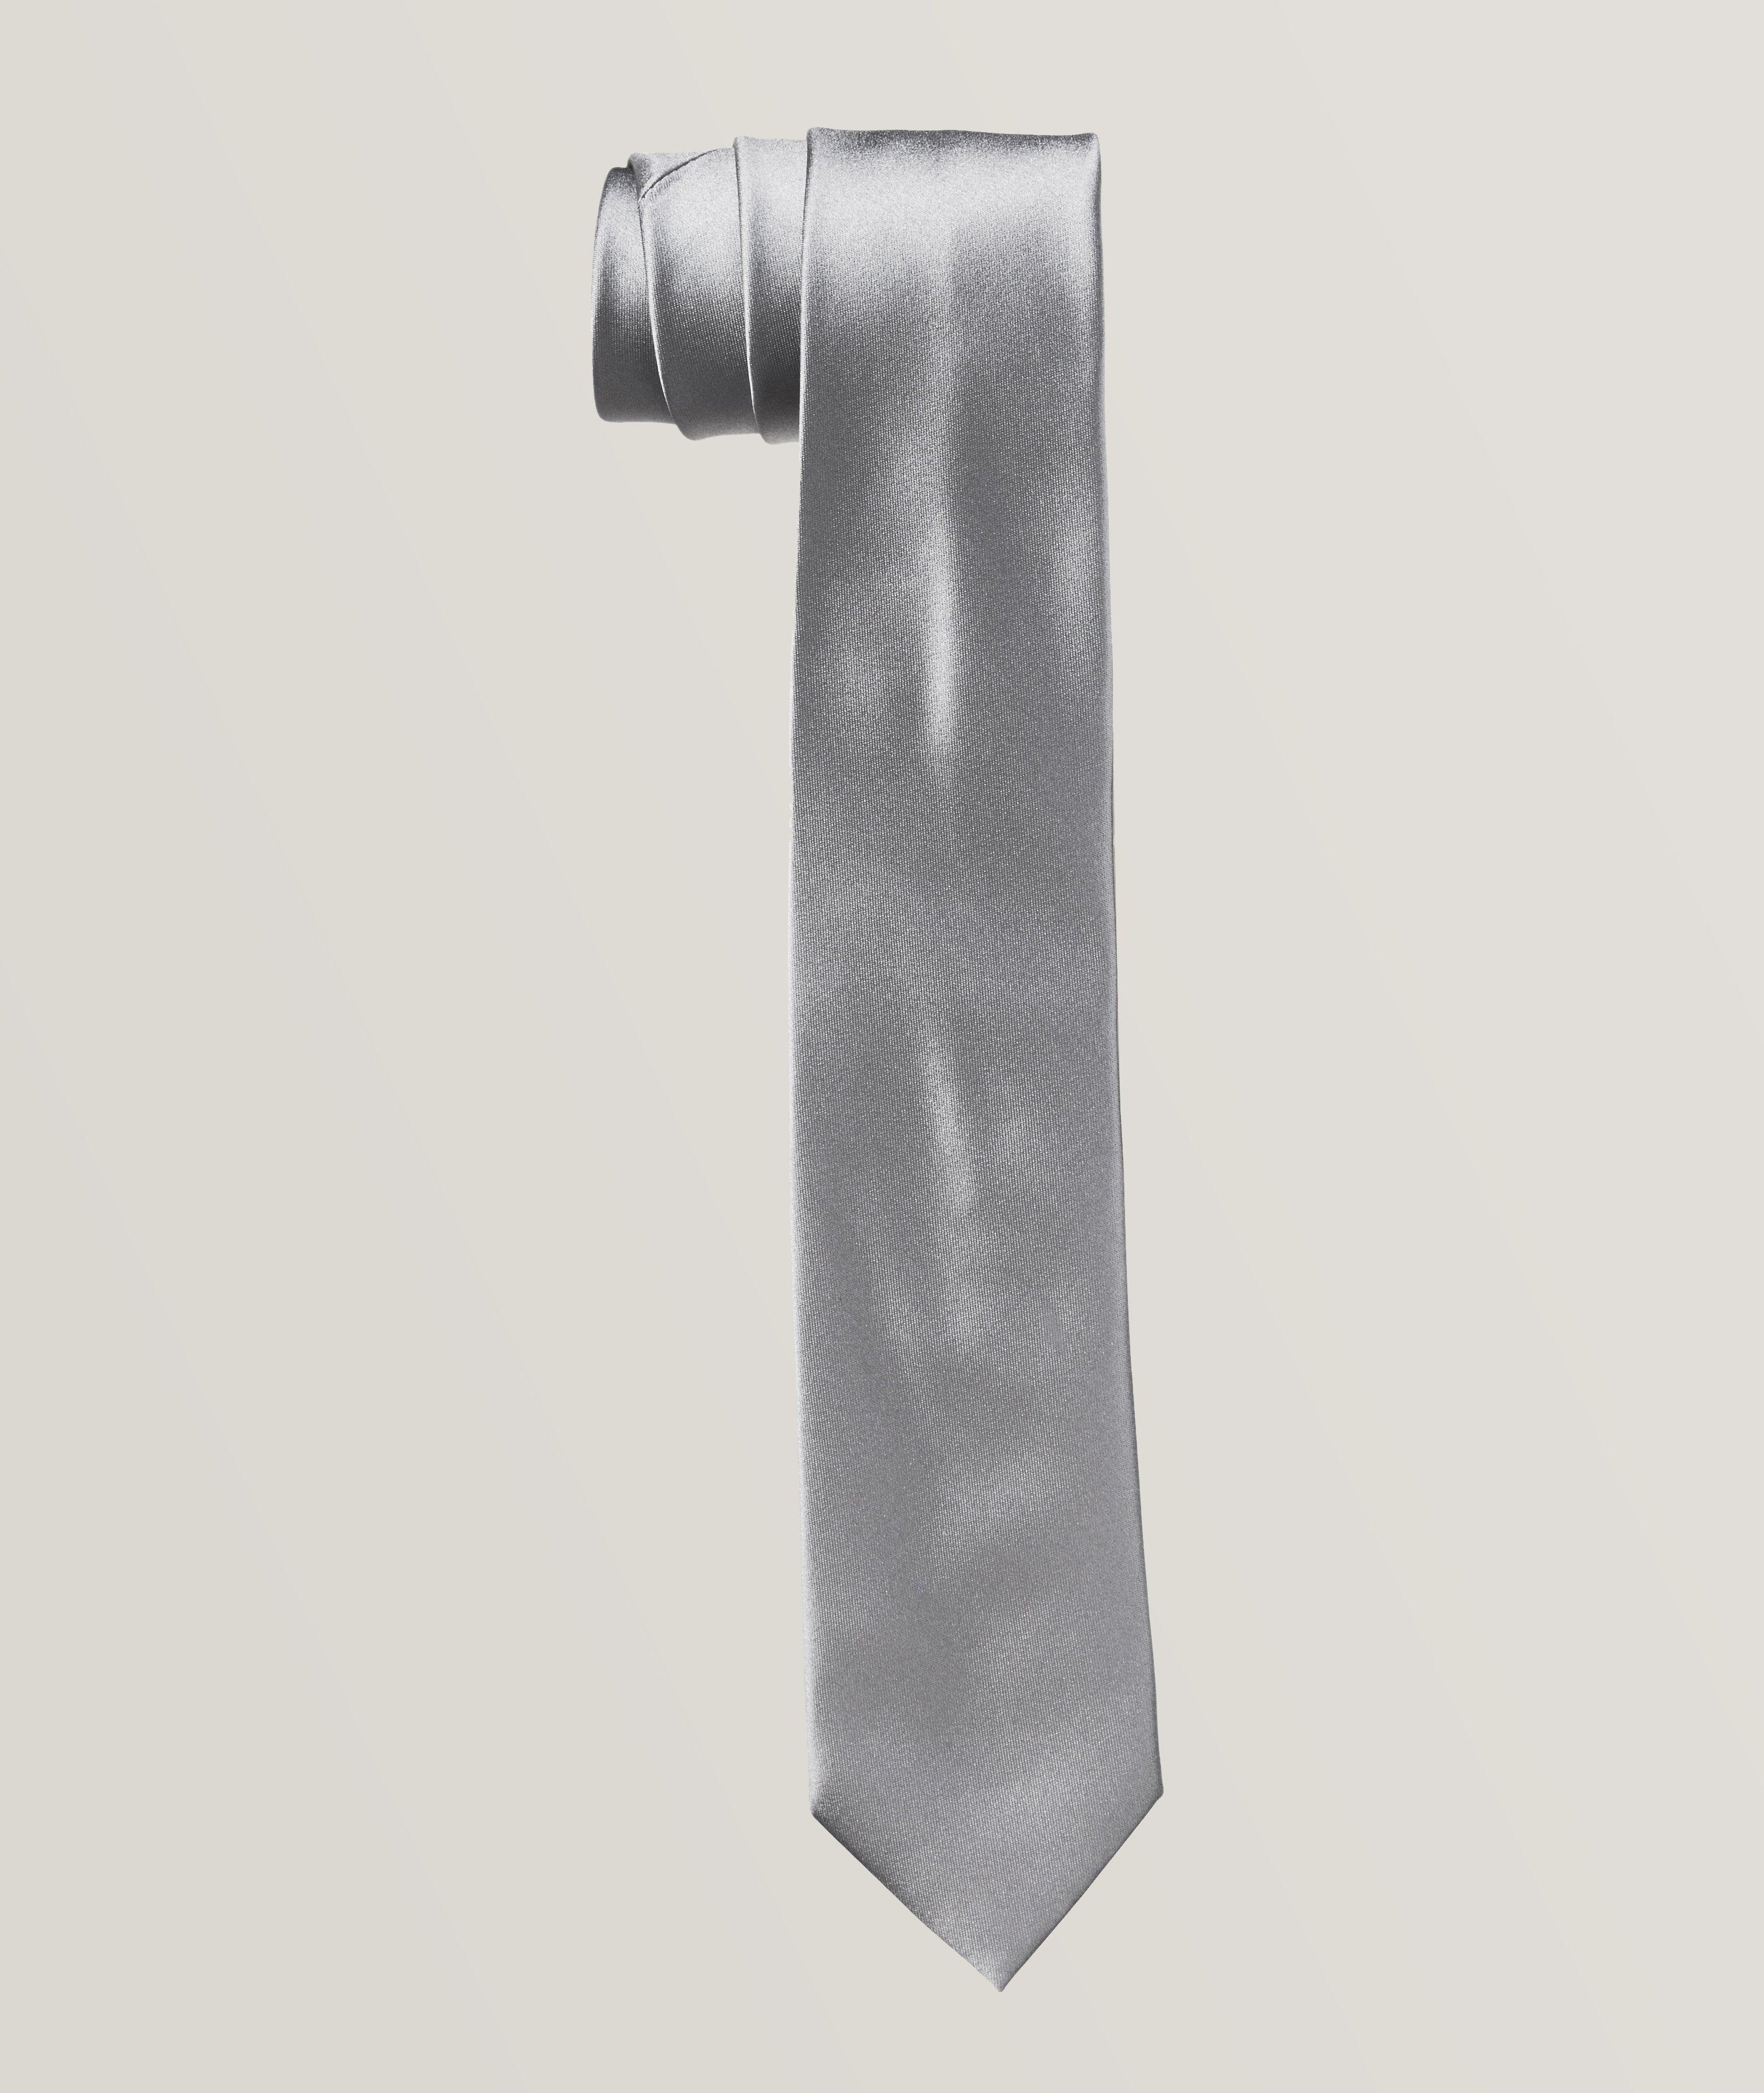 Cravate unie en soie image 0